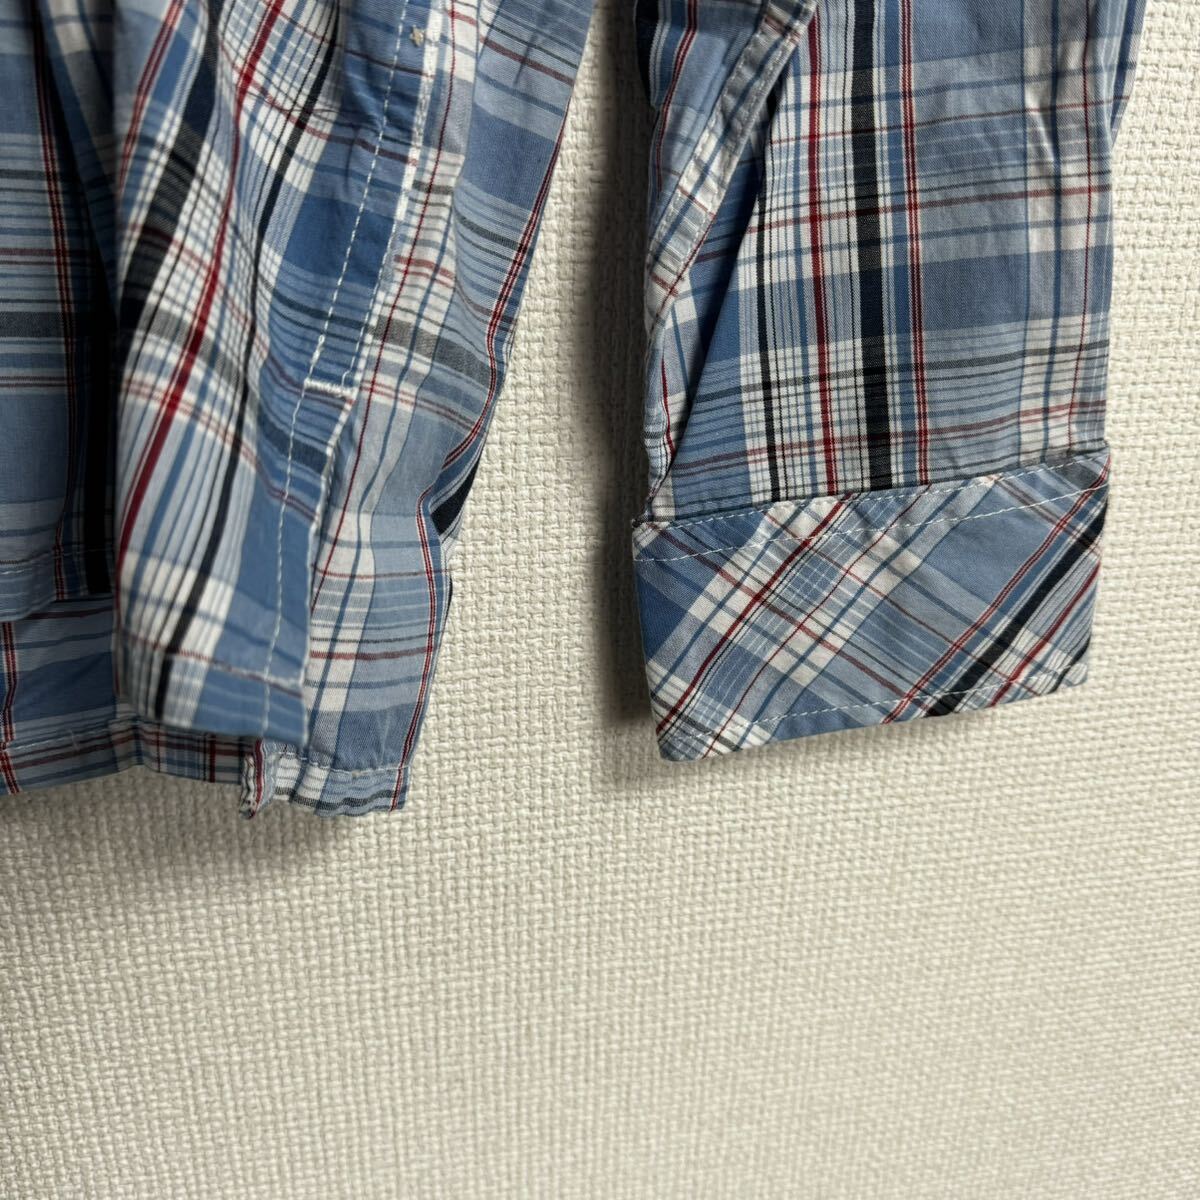 [ б/у одежда ]engineered garments рубашка с длинным рукавом m размер тянуть over бледно-голубой проверка голубой America производства 